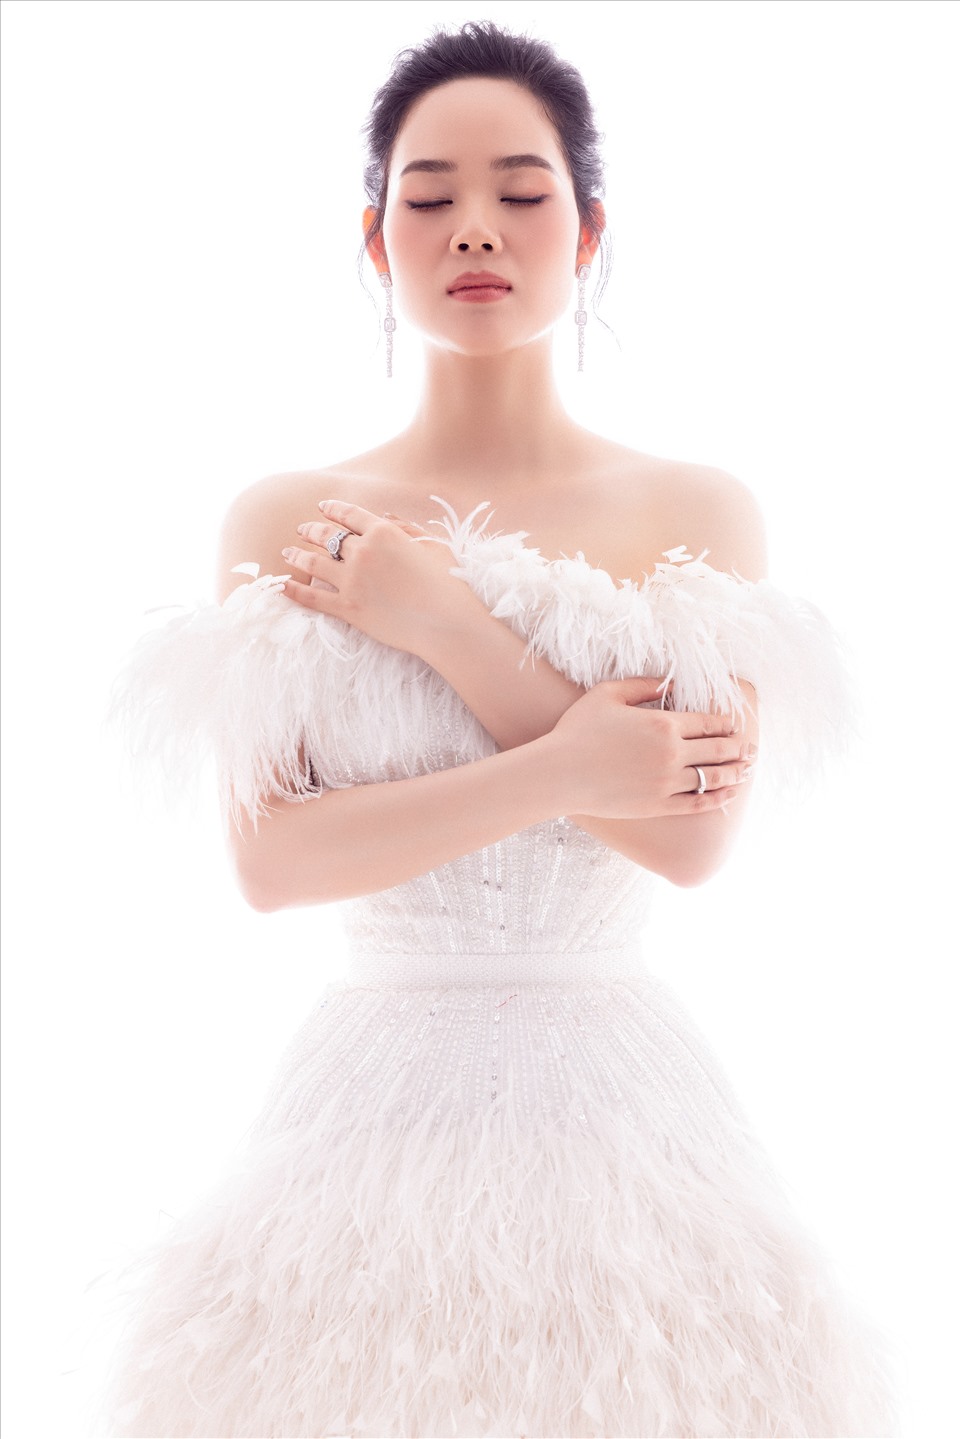 Trong bộ ảnh mới hoa hậu Mai Phương khoe vóc dáng trong các trang phục dạ hội nhấn eo, xẻ tà sâu hay khéo léo khoe vai trần quyến rũ. ẢNh: NVCC.